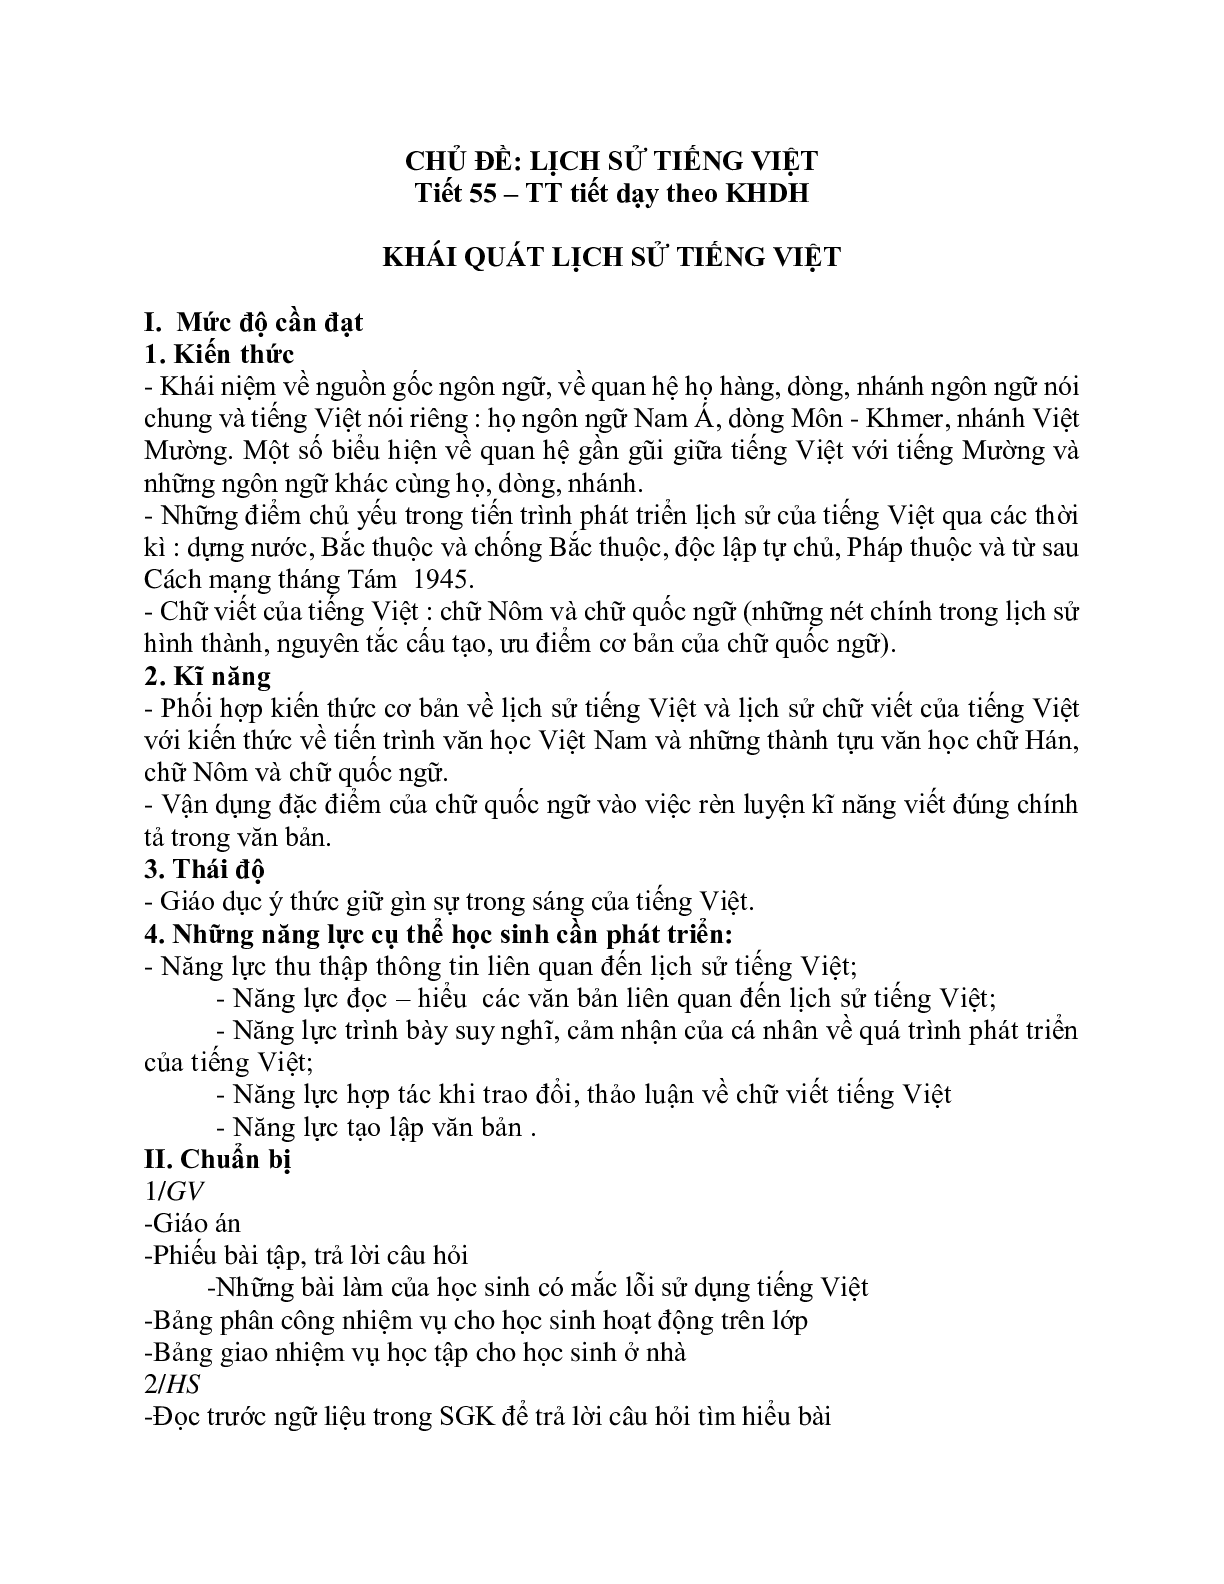 Giáo án ngữ văn lớp 10 Tiết 55: Khái quát lịch sử tiếng việt (trang 1)